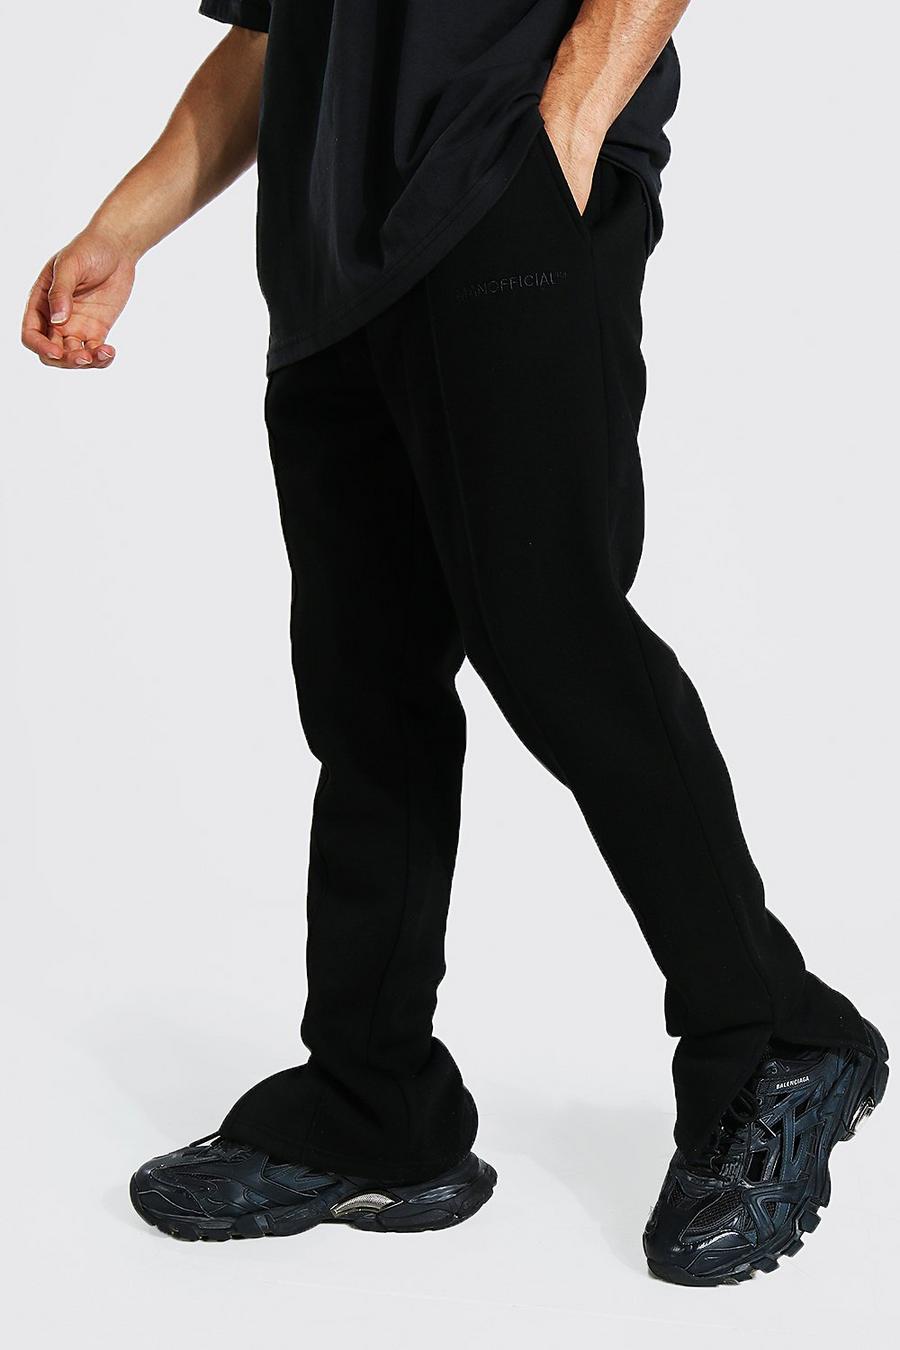 Pantalón deportivo MAN Official ajustado con abertura en el bajo, Black negro image number 1